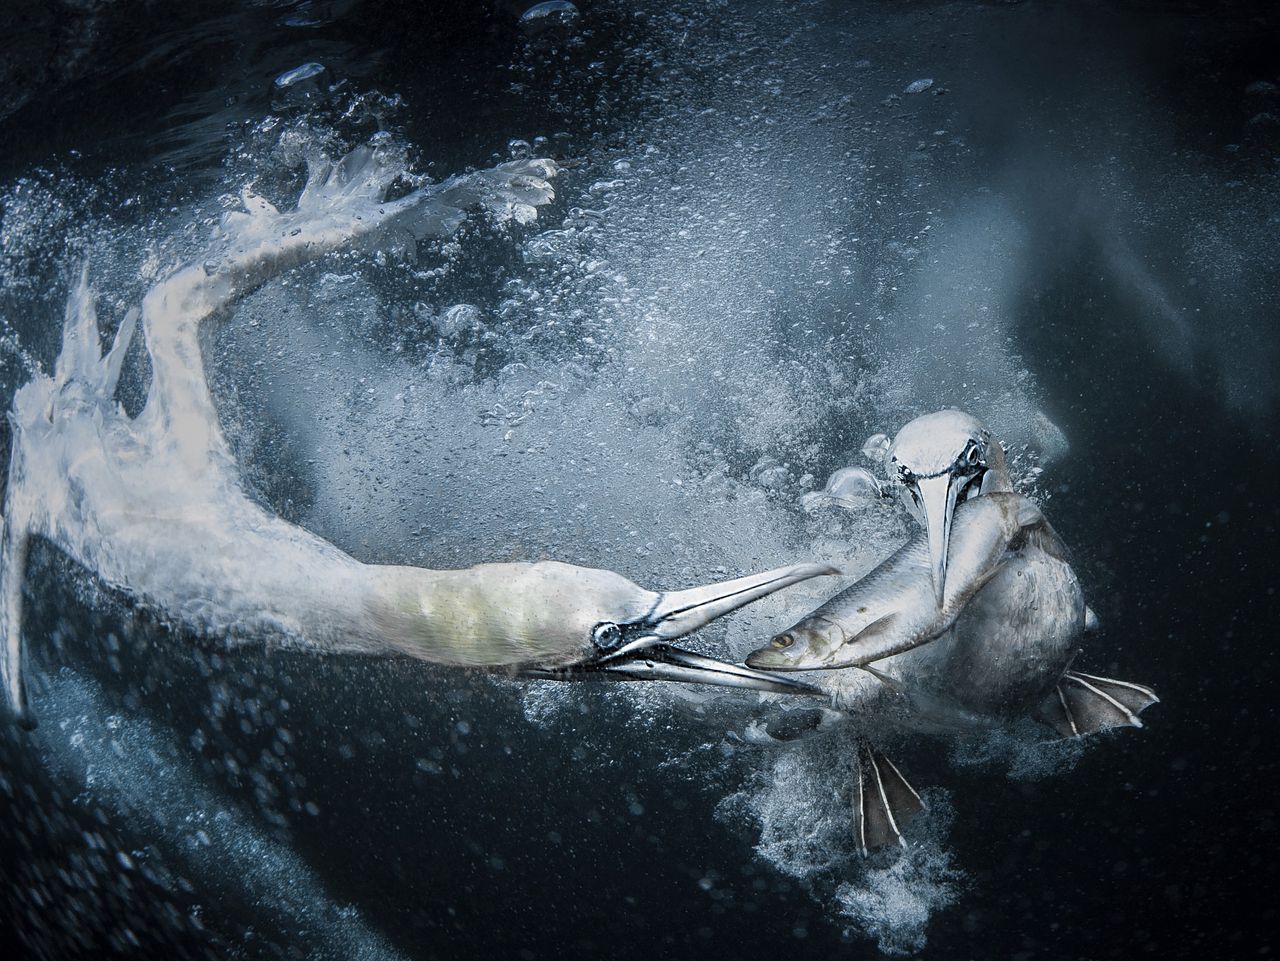 De winnende foto van de World Nature Photographer Awards toont twee jan van genten die naar vis duiken, gefotografeerd bij de Shetlandeilanden.